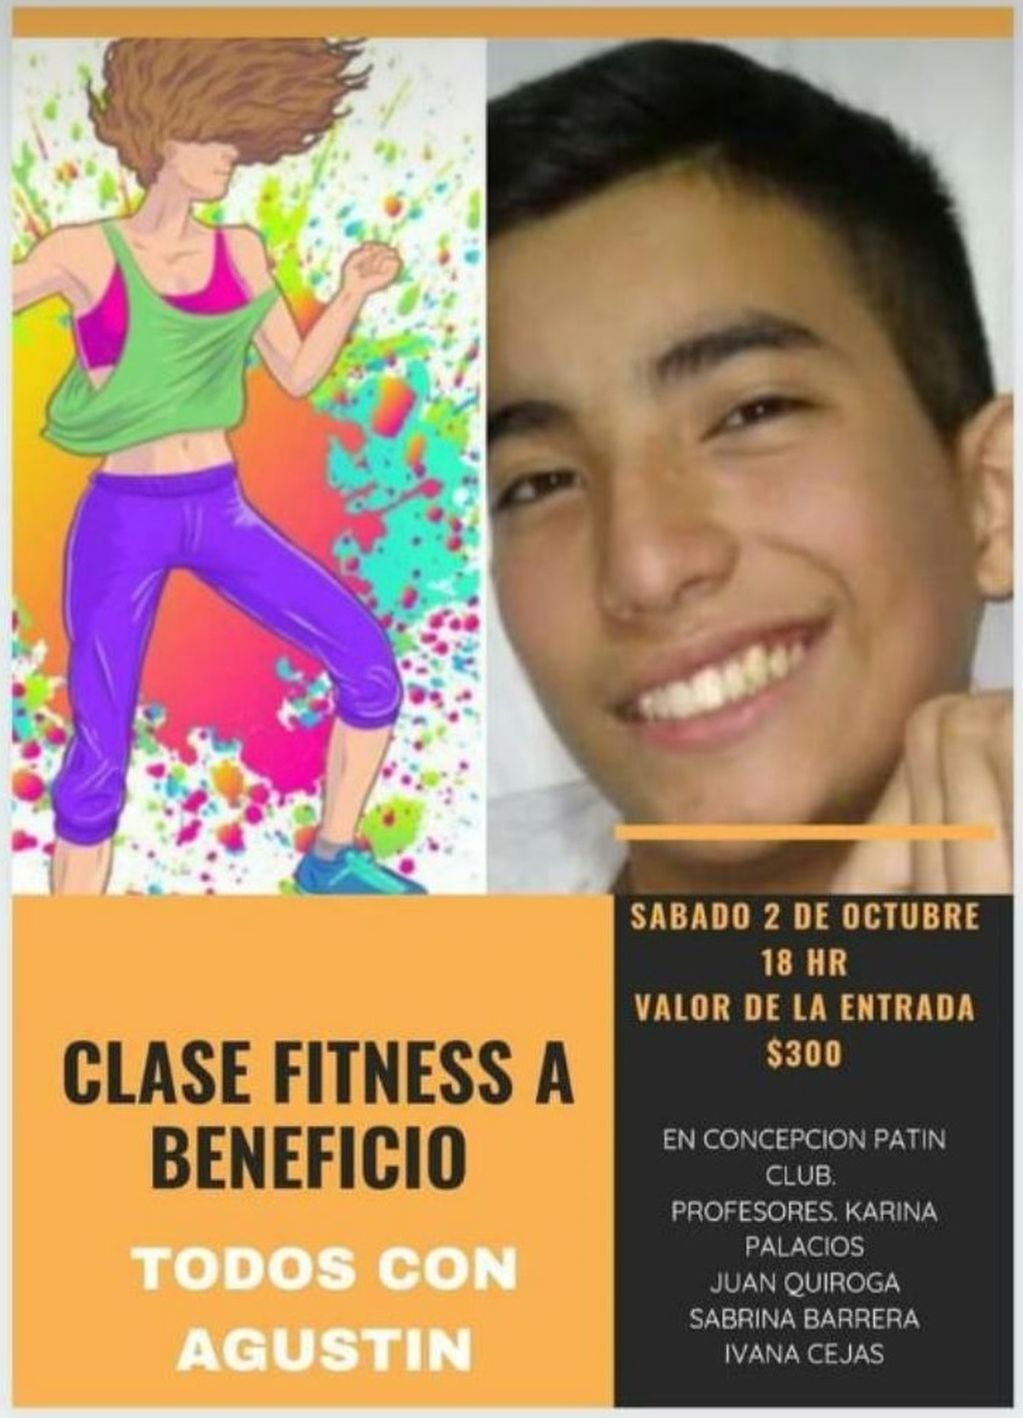 Las clases fitness a beneficio de Agustín serán este sábado a las 18